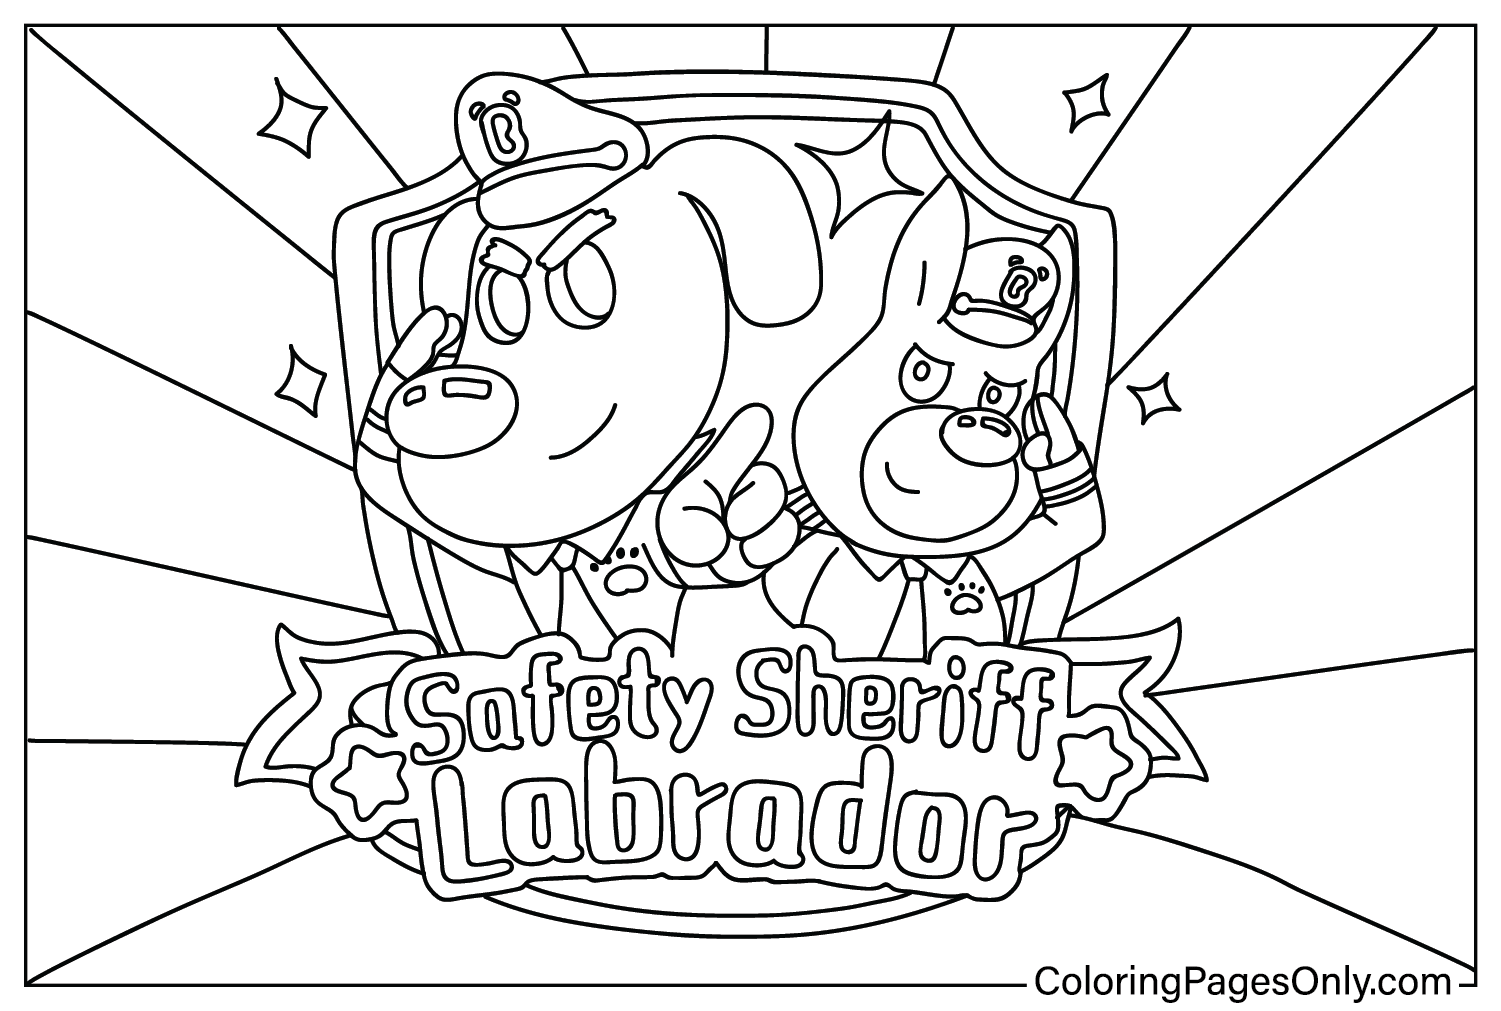 Safety Sheriff Labrador Kleurplaten voor kinderen van Safety Sheriff Labrador